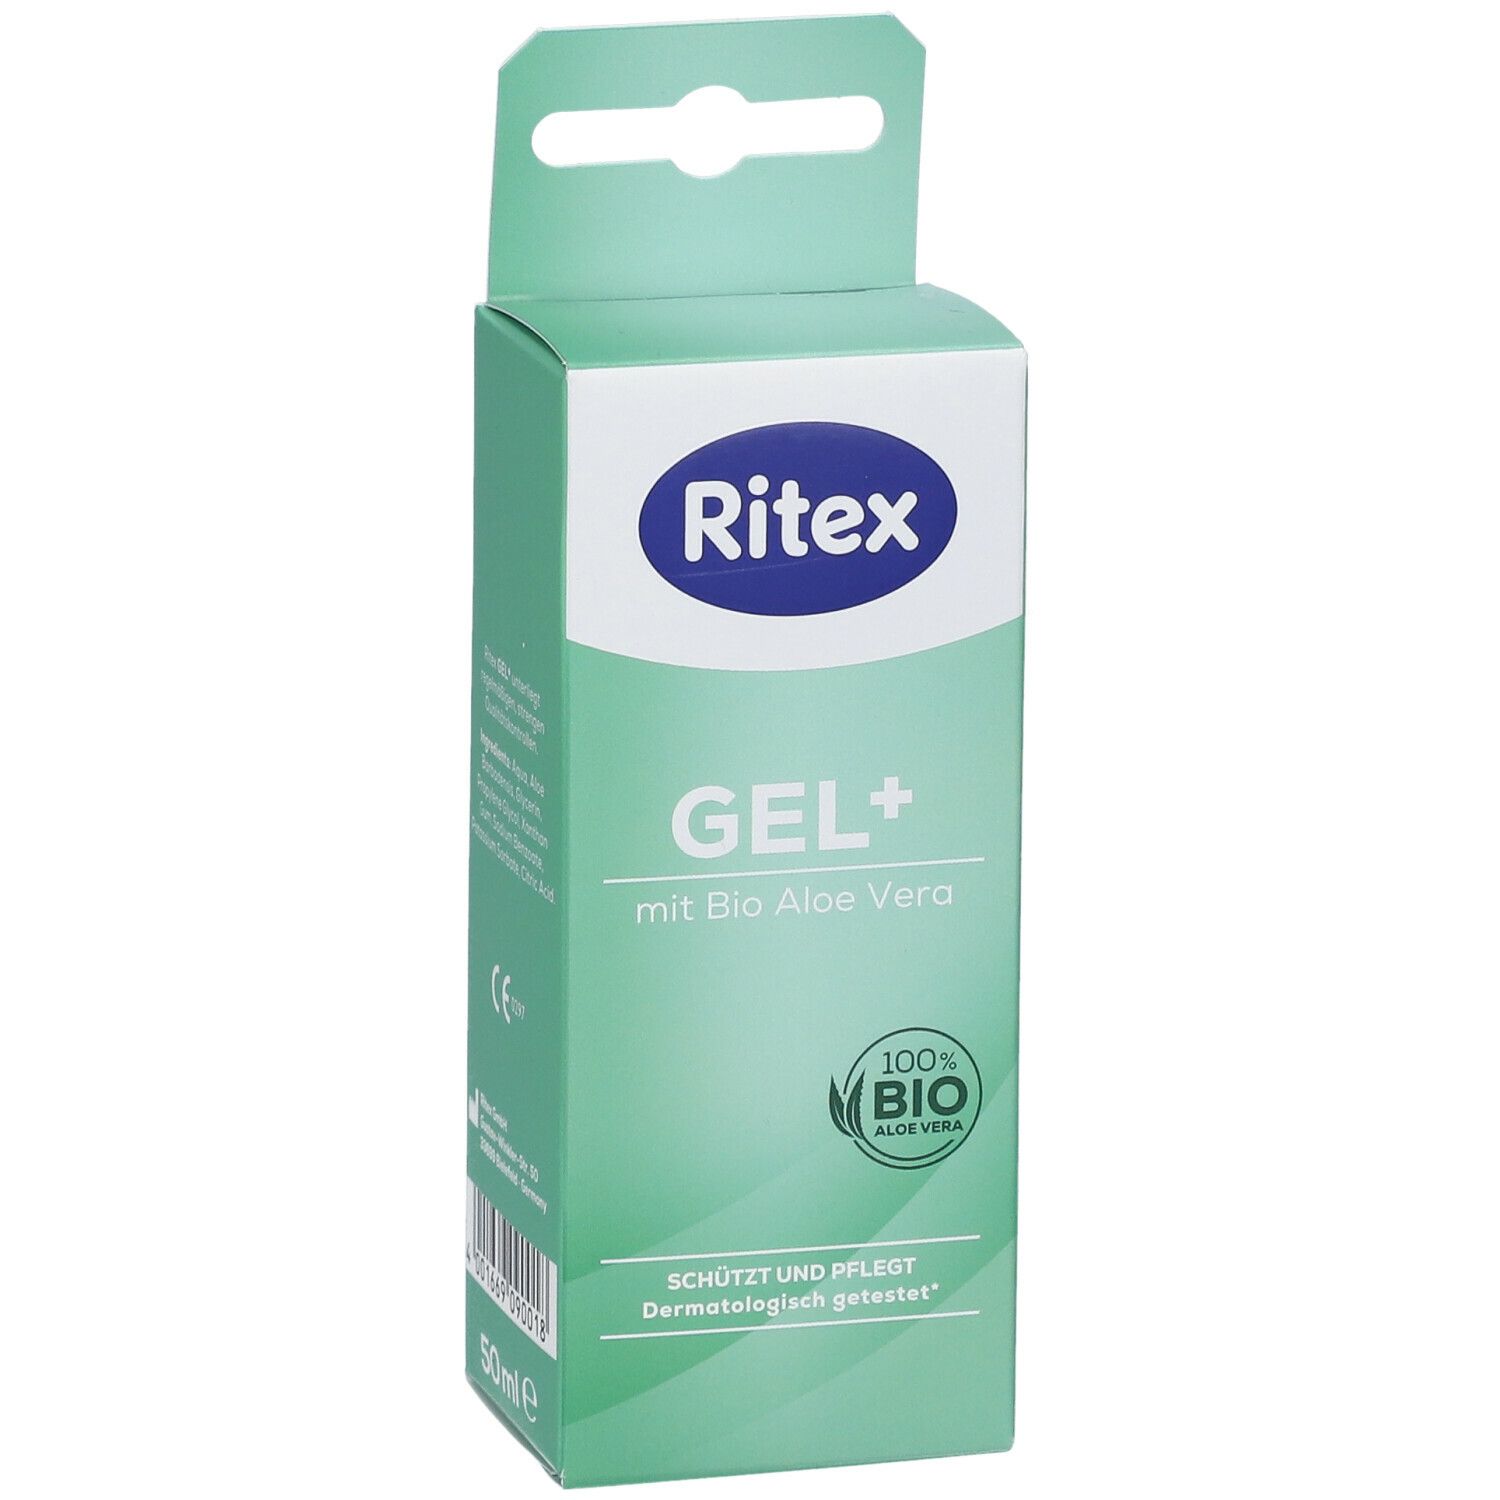 Ritex GEL+ Gleit- & Massage Gel mit Bio-Aloe Vera